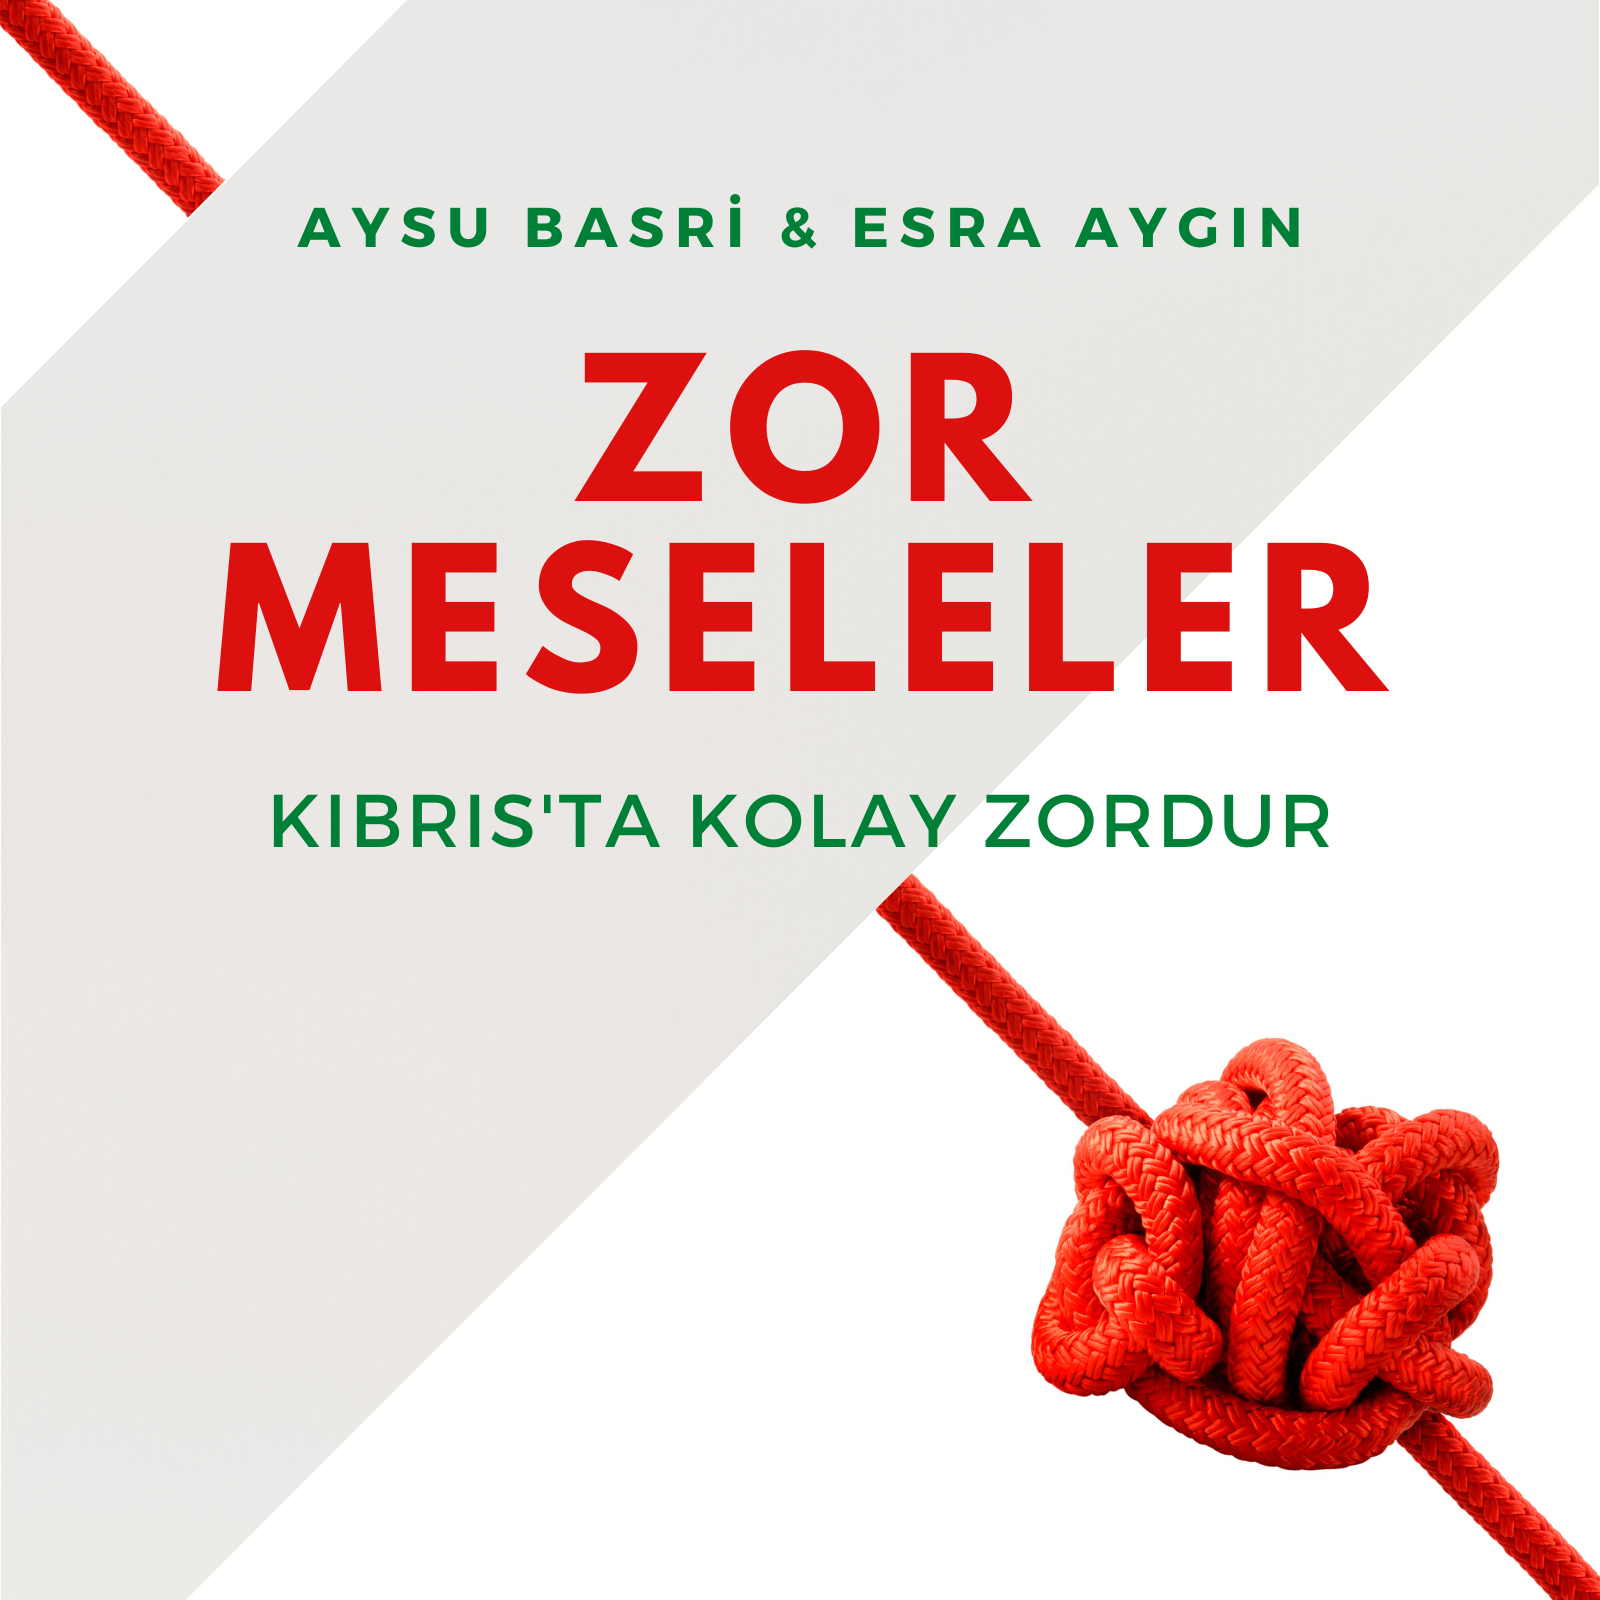 Zor Meseleler - Bölüm 4: Aysu Basri Akter Türkiye'ye alınmayışını ve sonrasını anlatıyor (22/9/2022)